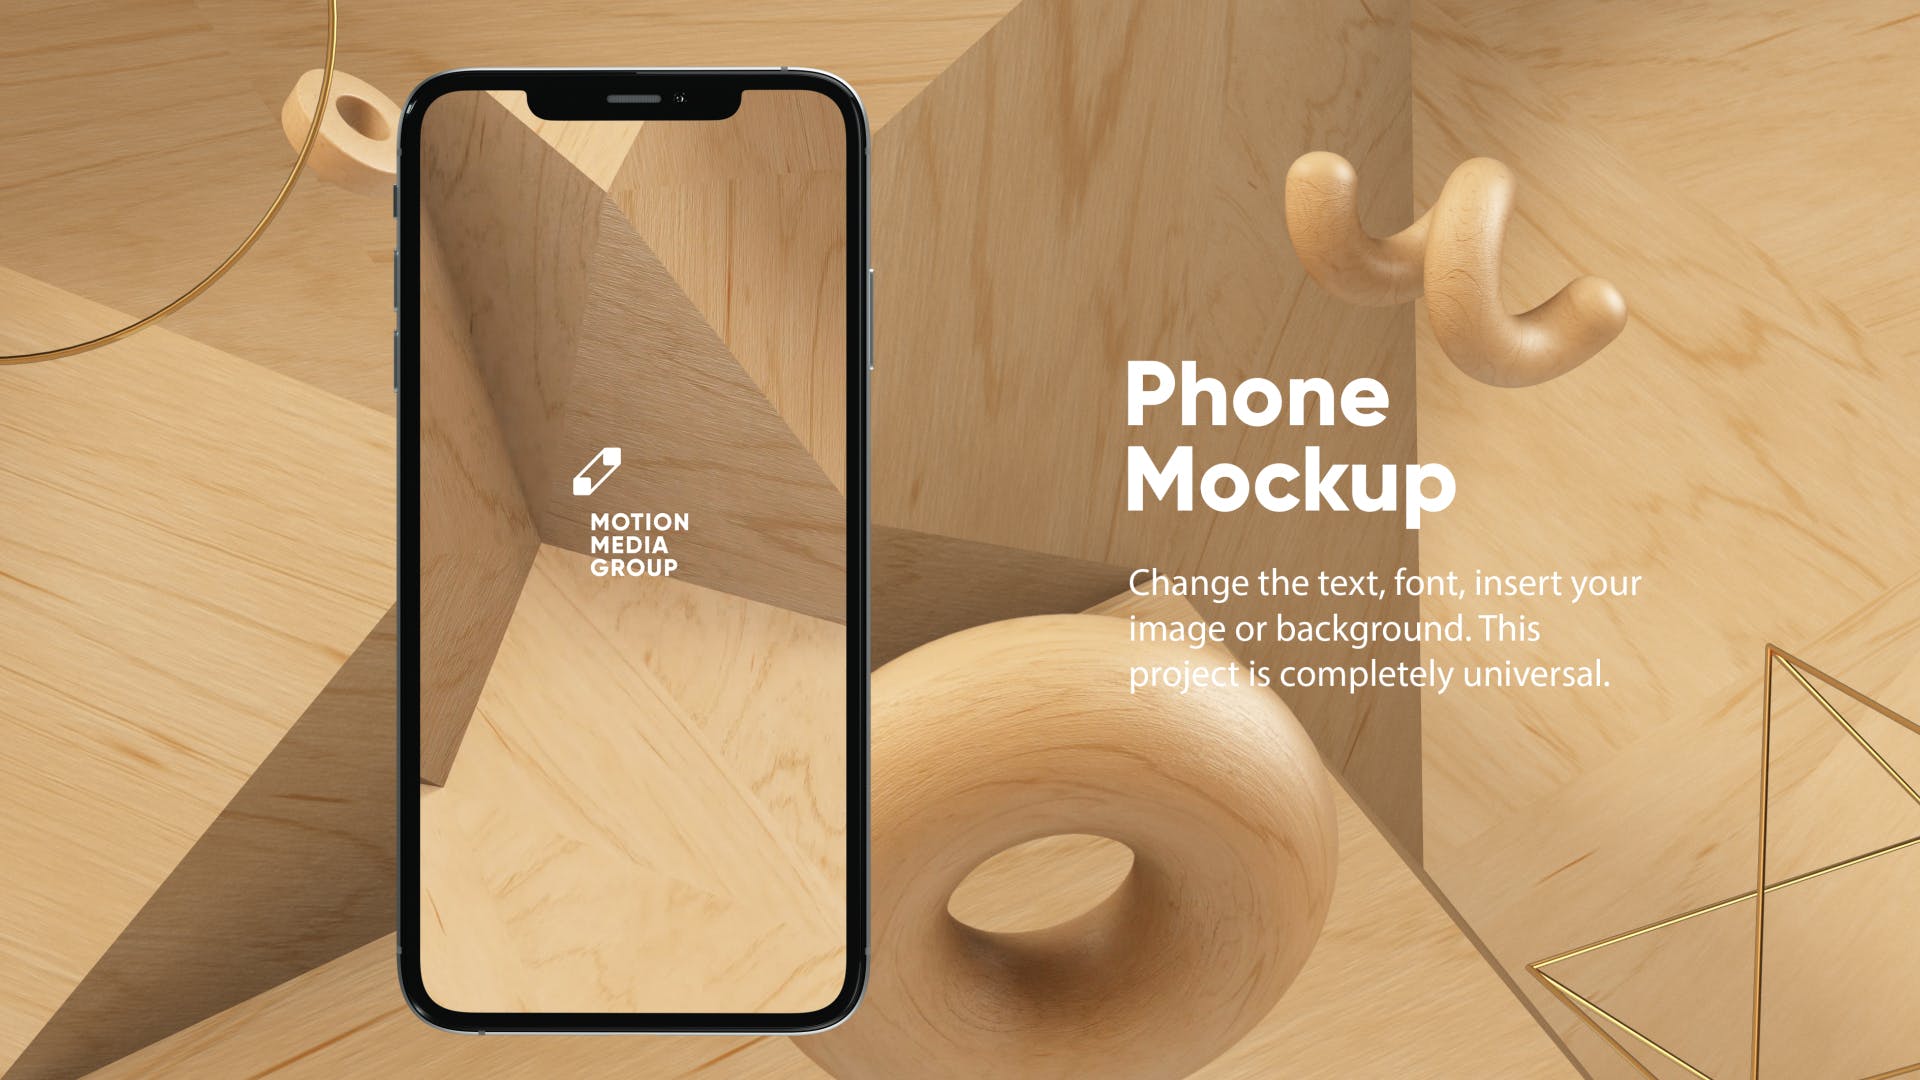 优雅时尚风格3D立体风格iPhone手机屏幕预览第一素材精选样机 10 Light Phone Mockups插图(3)